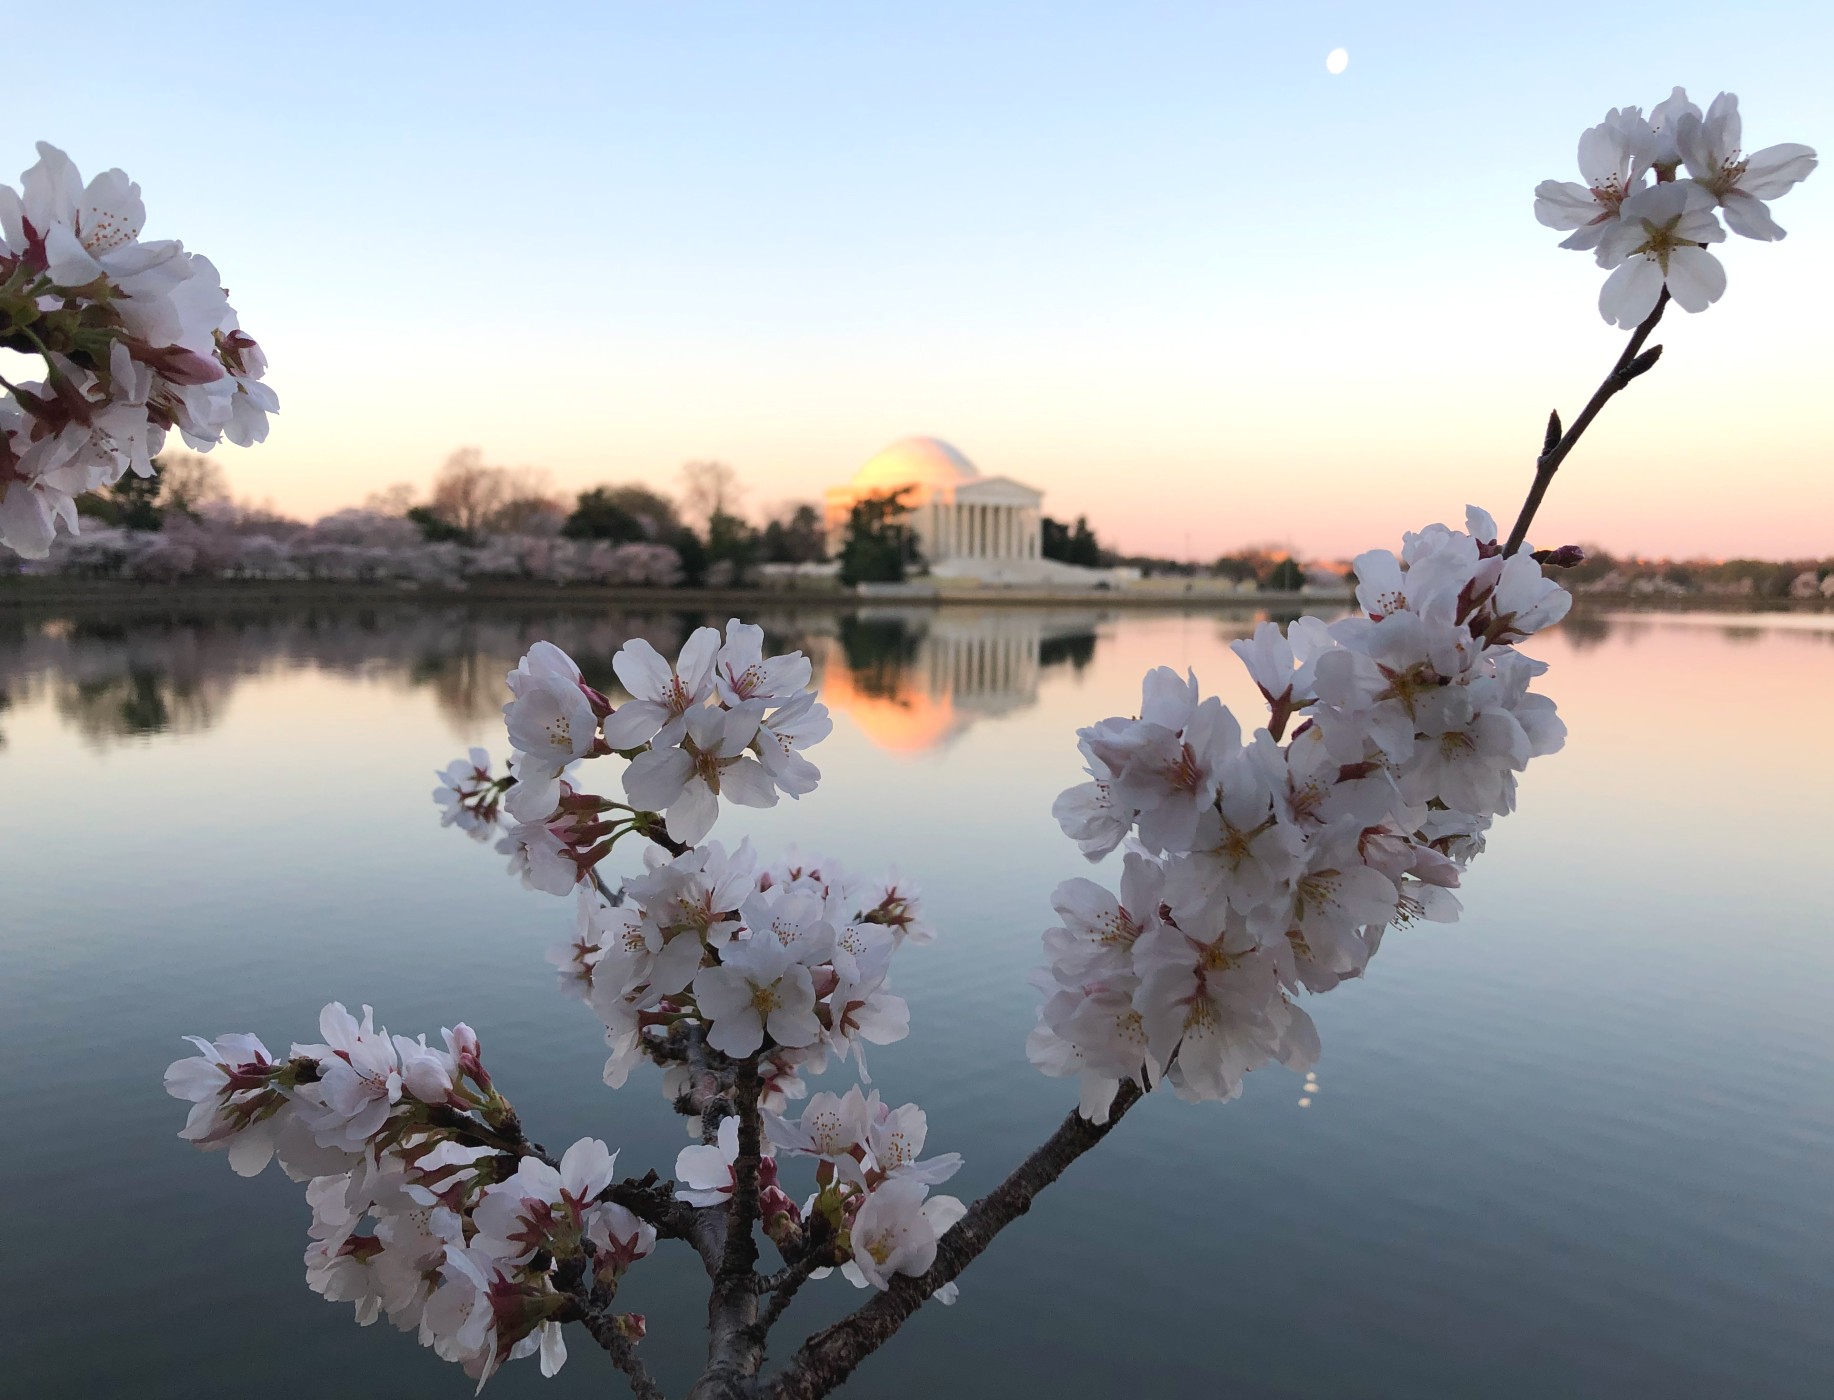 2021 National Cherry Blossom Festival Mobility Guide